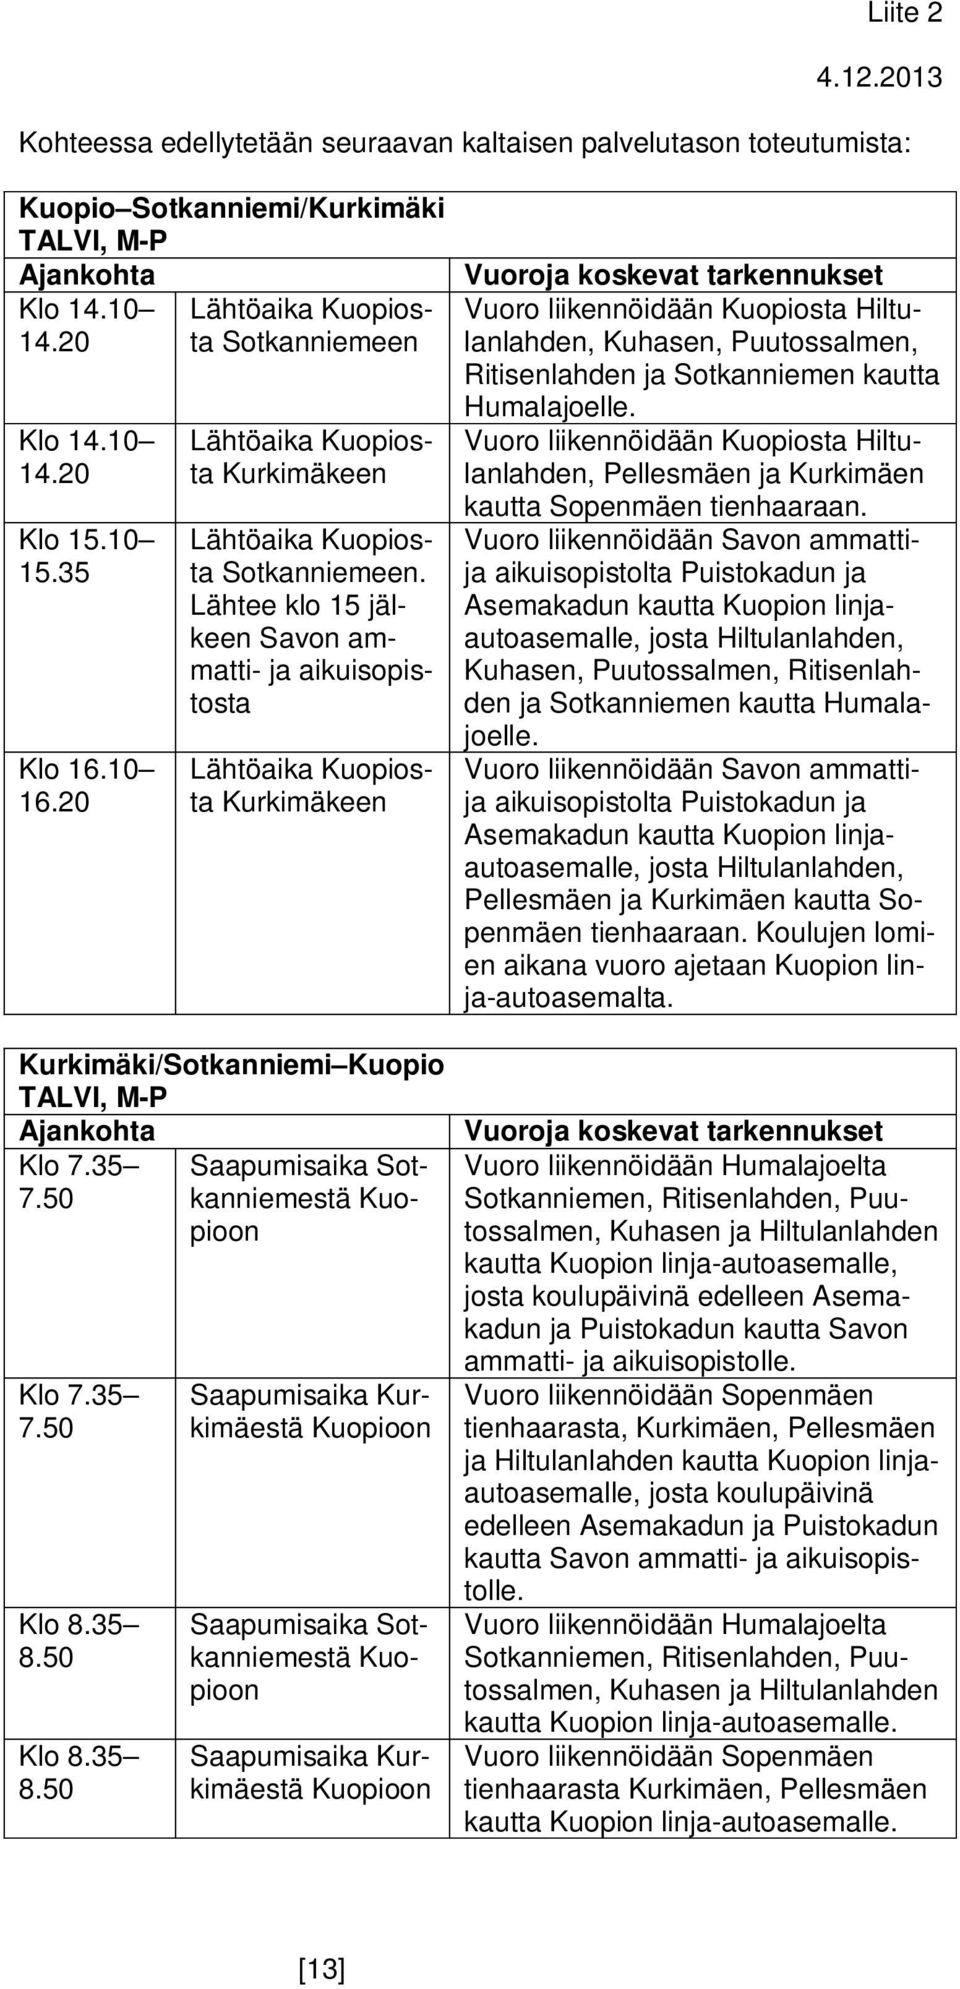 Lähtee klo 15 jälkeen Savon ammatti- ja aikuisopistosta Lähtöaika Kuopiosta Kurkimäkeen Kurkimäki/Sotkanniemi Kuopio TALVI, M-P Klo 7.35 7.50 Klo 7.35 7.50 Klo 8.35 8.